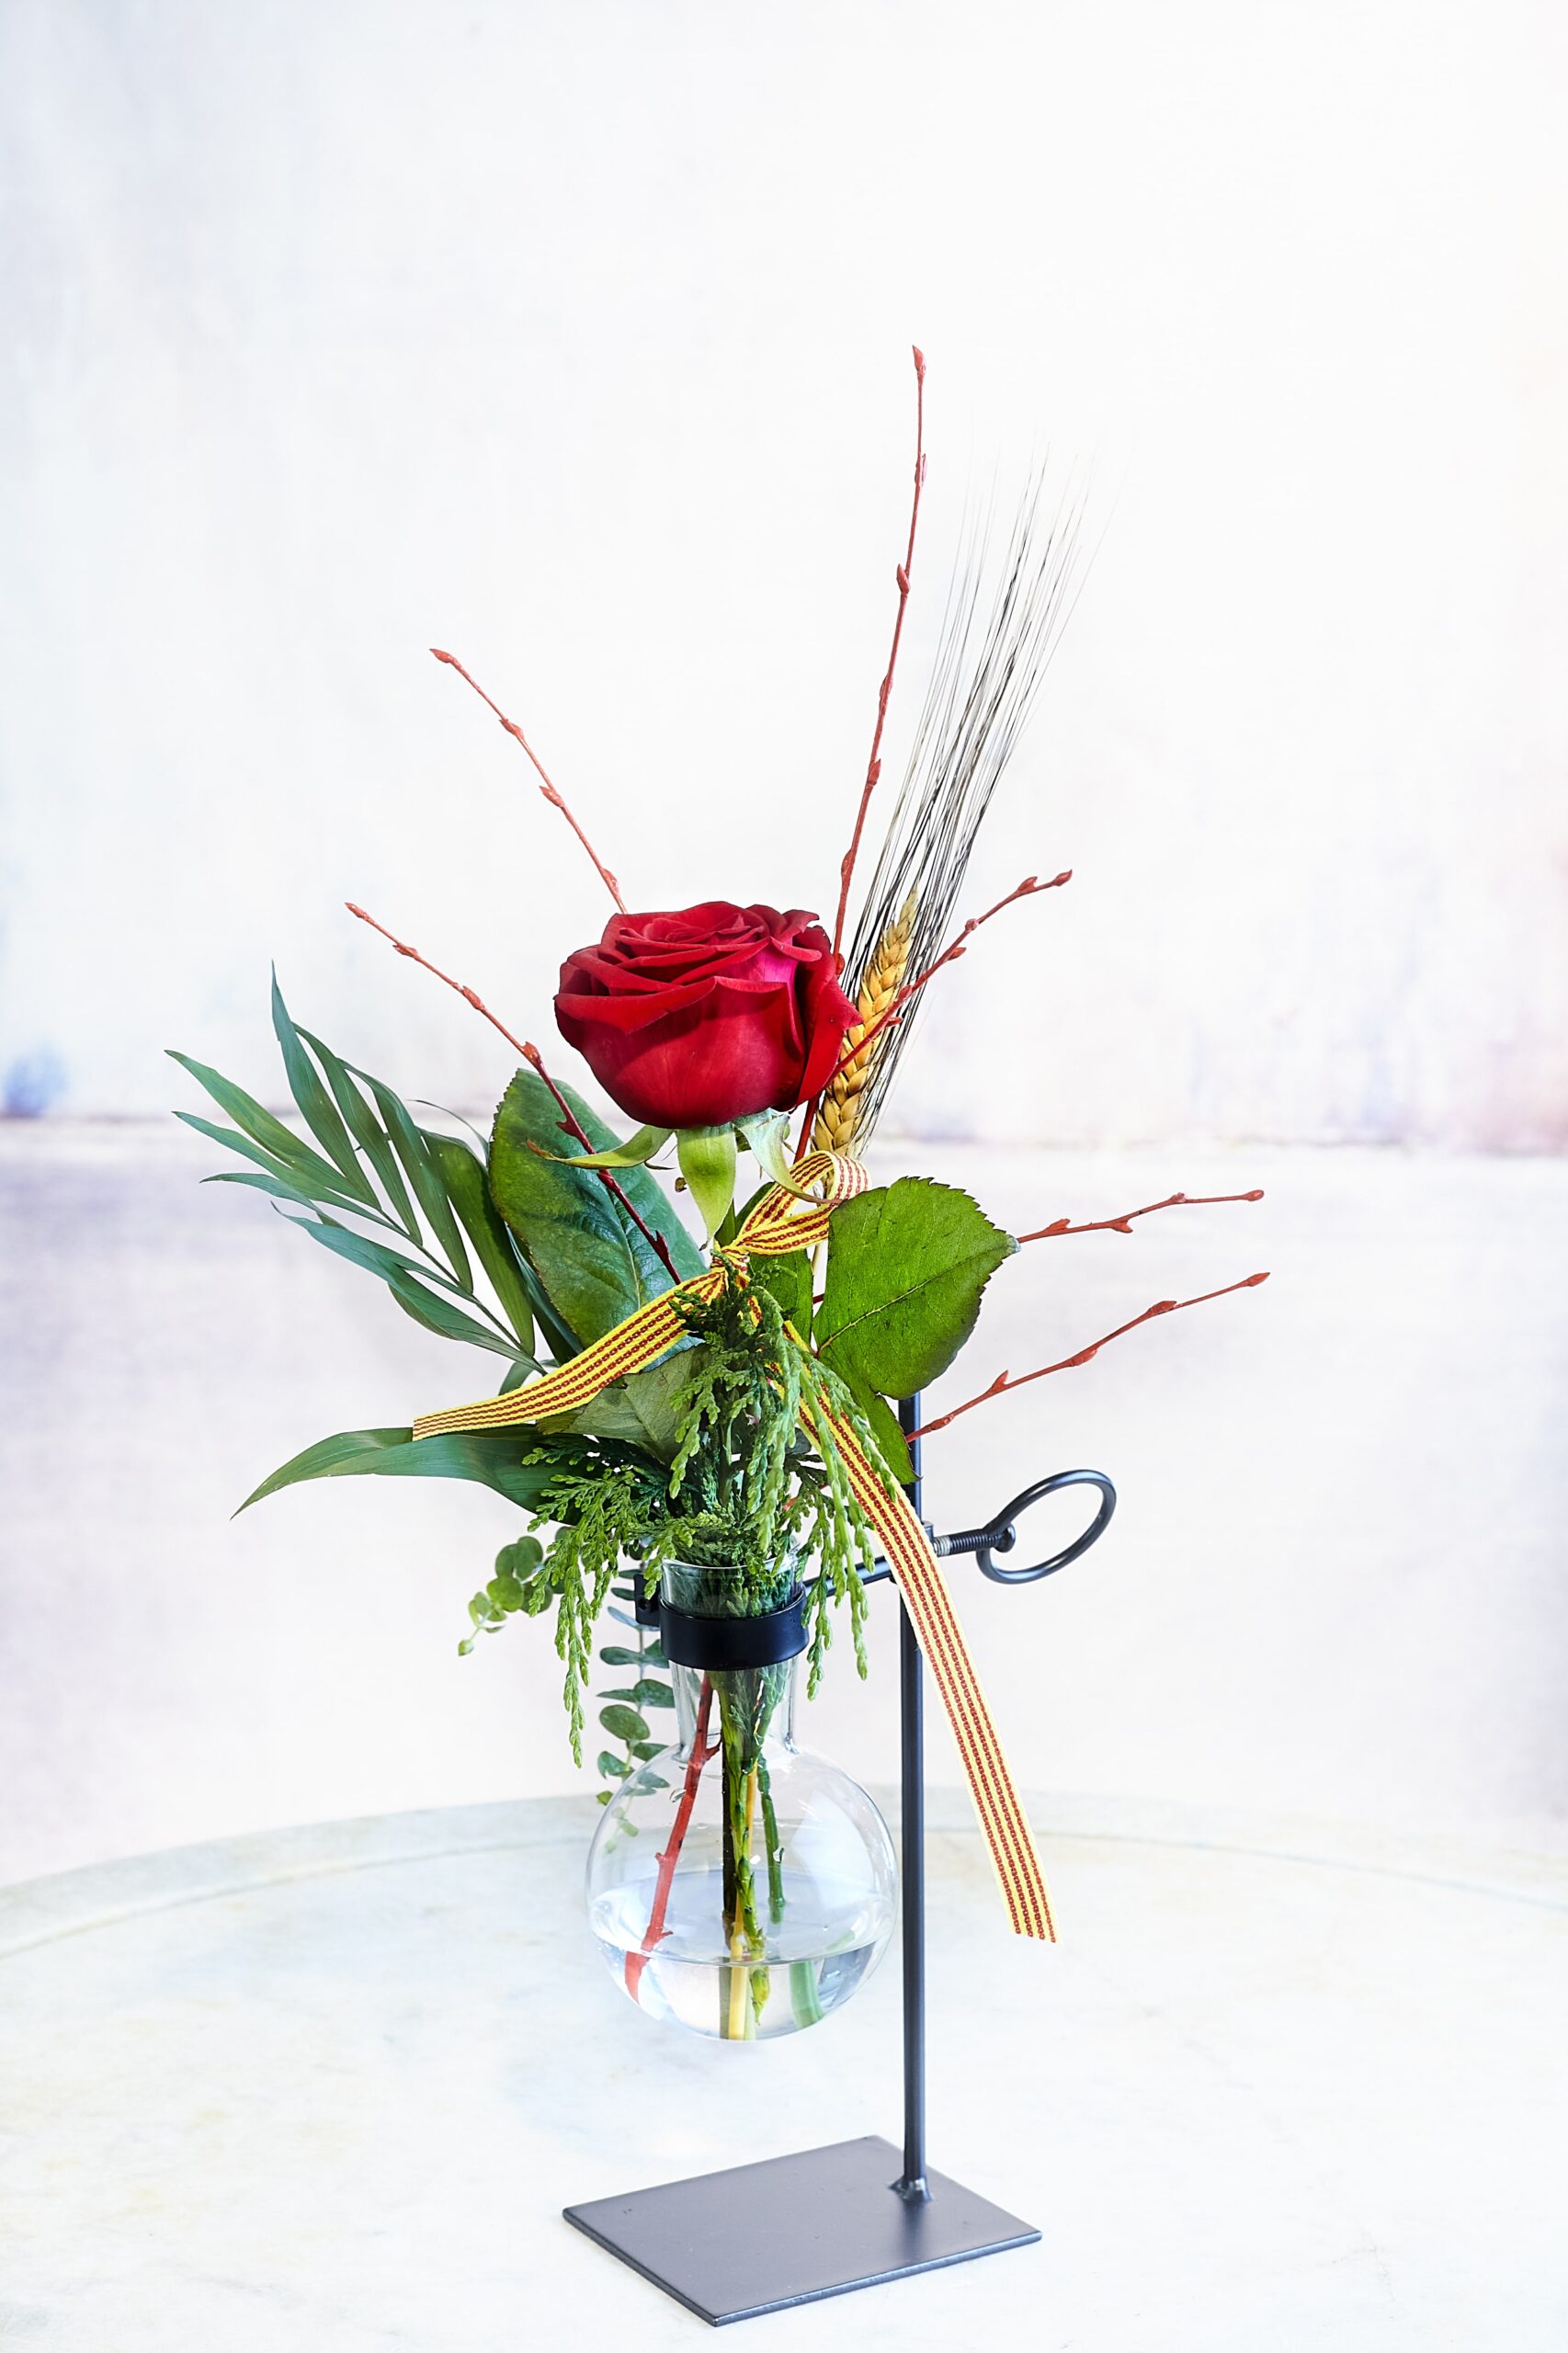 Ram de roses Sant Jordi. A VENTURA Floristes trobaràs les roses més fresques i de qualitat.